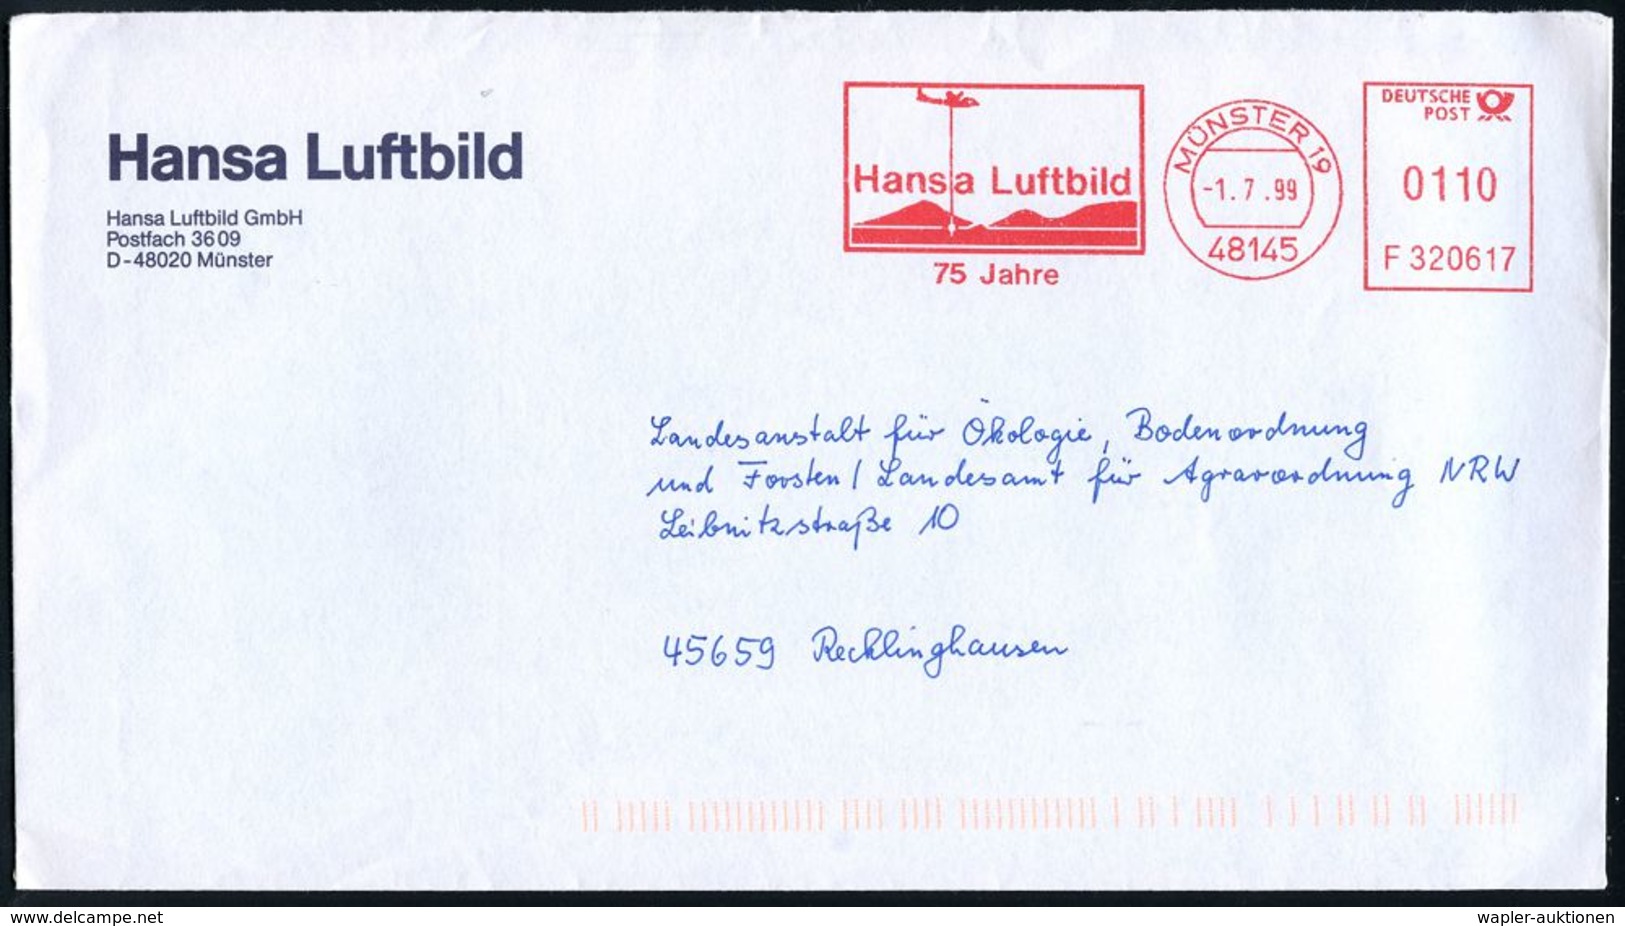 ALLGEMEINE FLUGTHEMATIK / FLUGWESEN : 48145 MÜNSTER 19/ F320617/ Hansa Luftbild/ 75 Jahre 1999 (1.7.) Jubil.-AFS = Flugz - Other (Air)